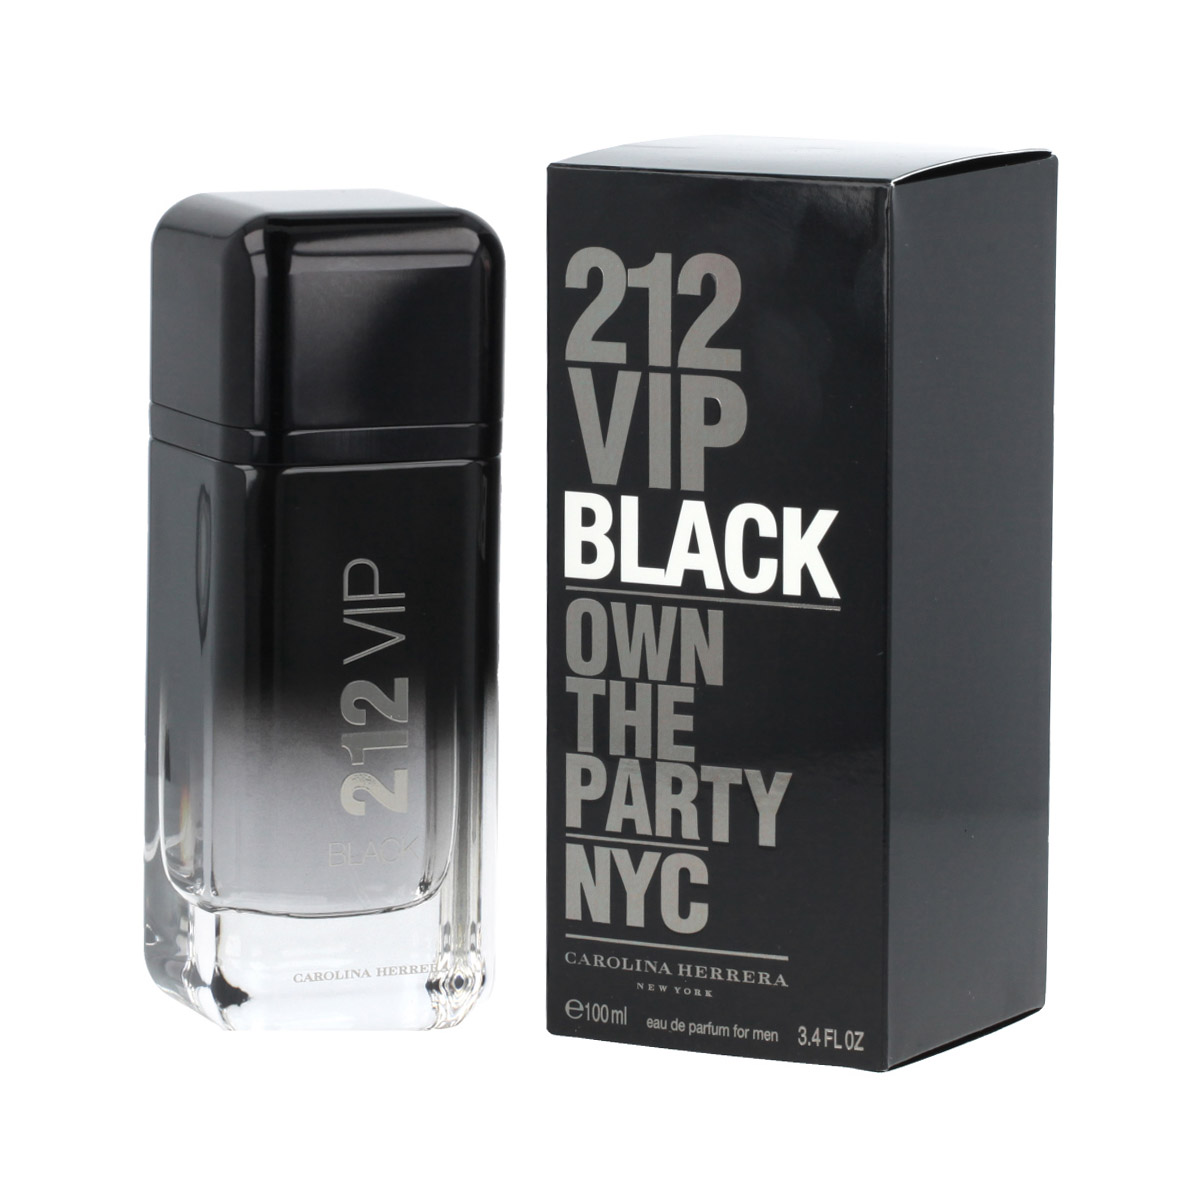 Carolina Herrera парфюмированные духи 212 VIP Men Black мужские 100мл